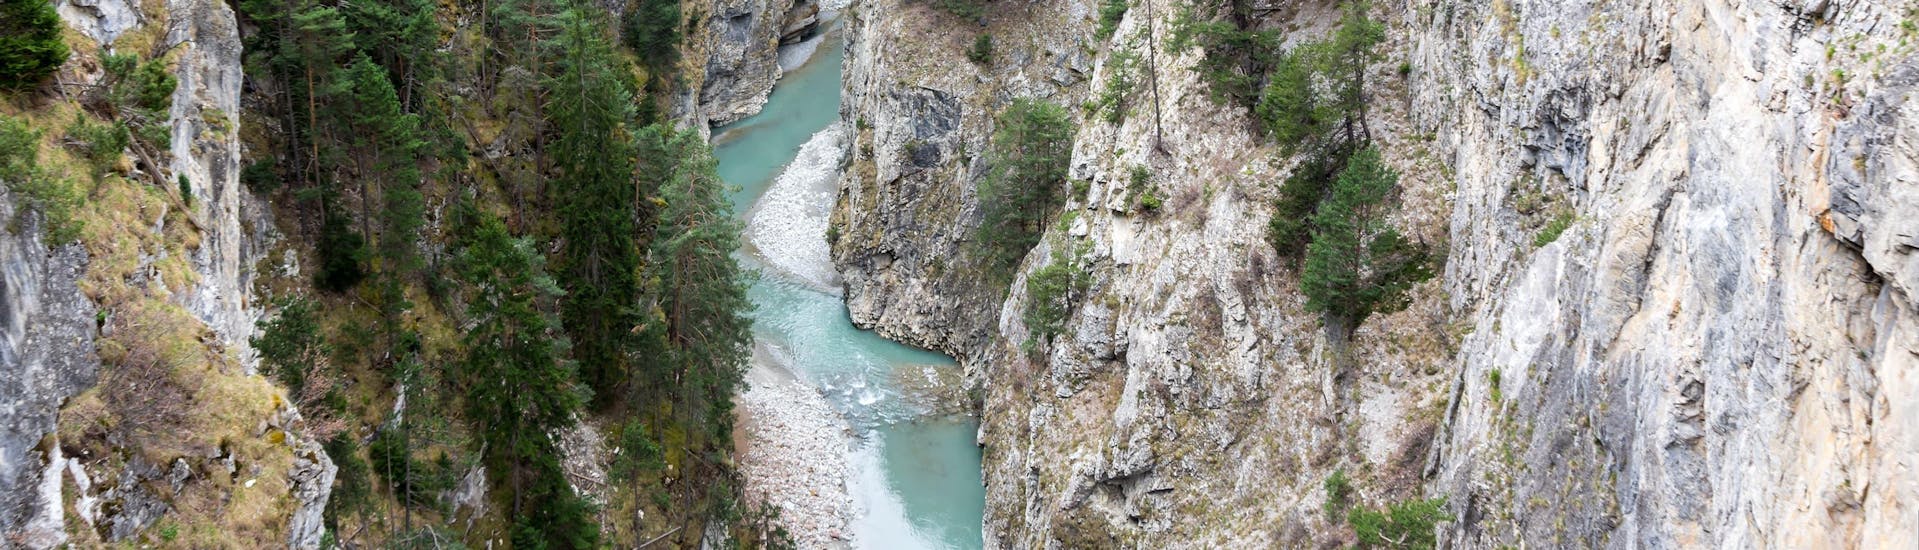 Vue d'une gorge dans la région d'Annecy où il est possible de faire du canyoning.